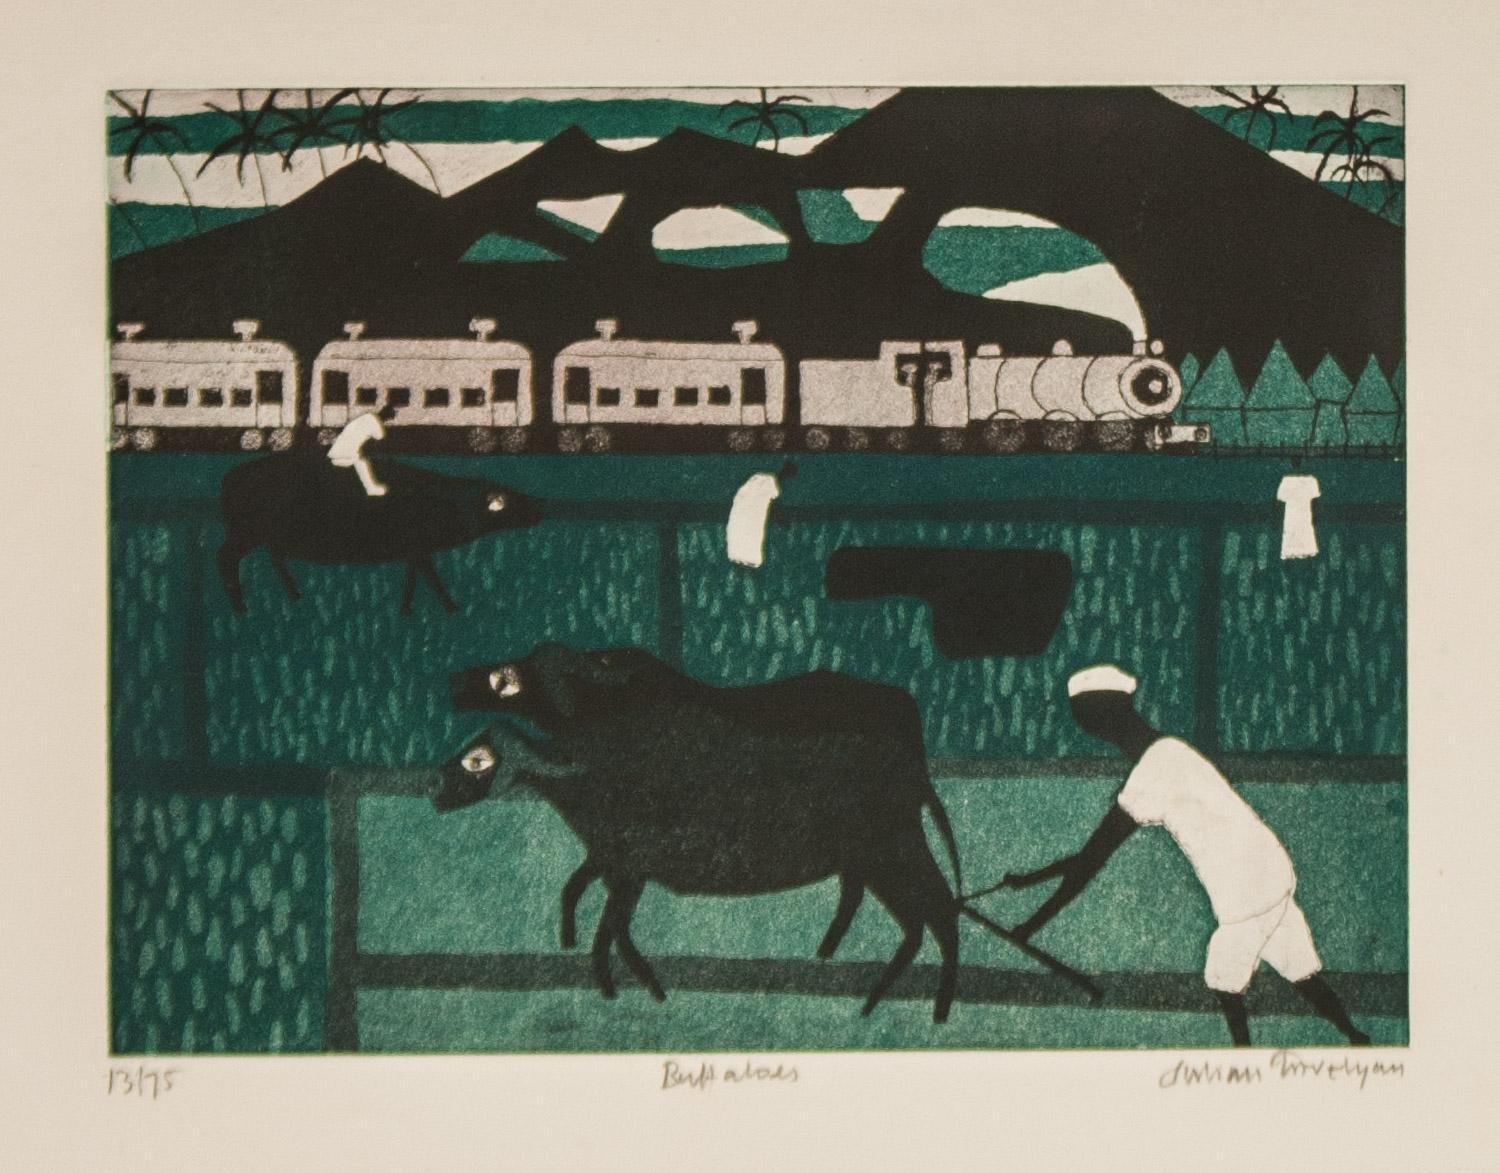        Büffel  ist eine signierte Aquatintaradierung in limitierter Auflage (13/75) des britischen Künstlers und Dichters Julian Trevelyan. Mehrere Büffel und Arbeiter sind in einem  feld mit  berge  und ein Zug im Hintergrund. In gutem Zustand.  